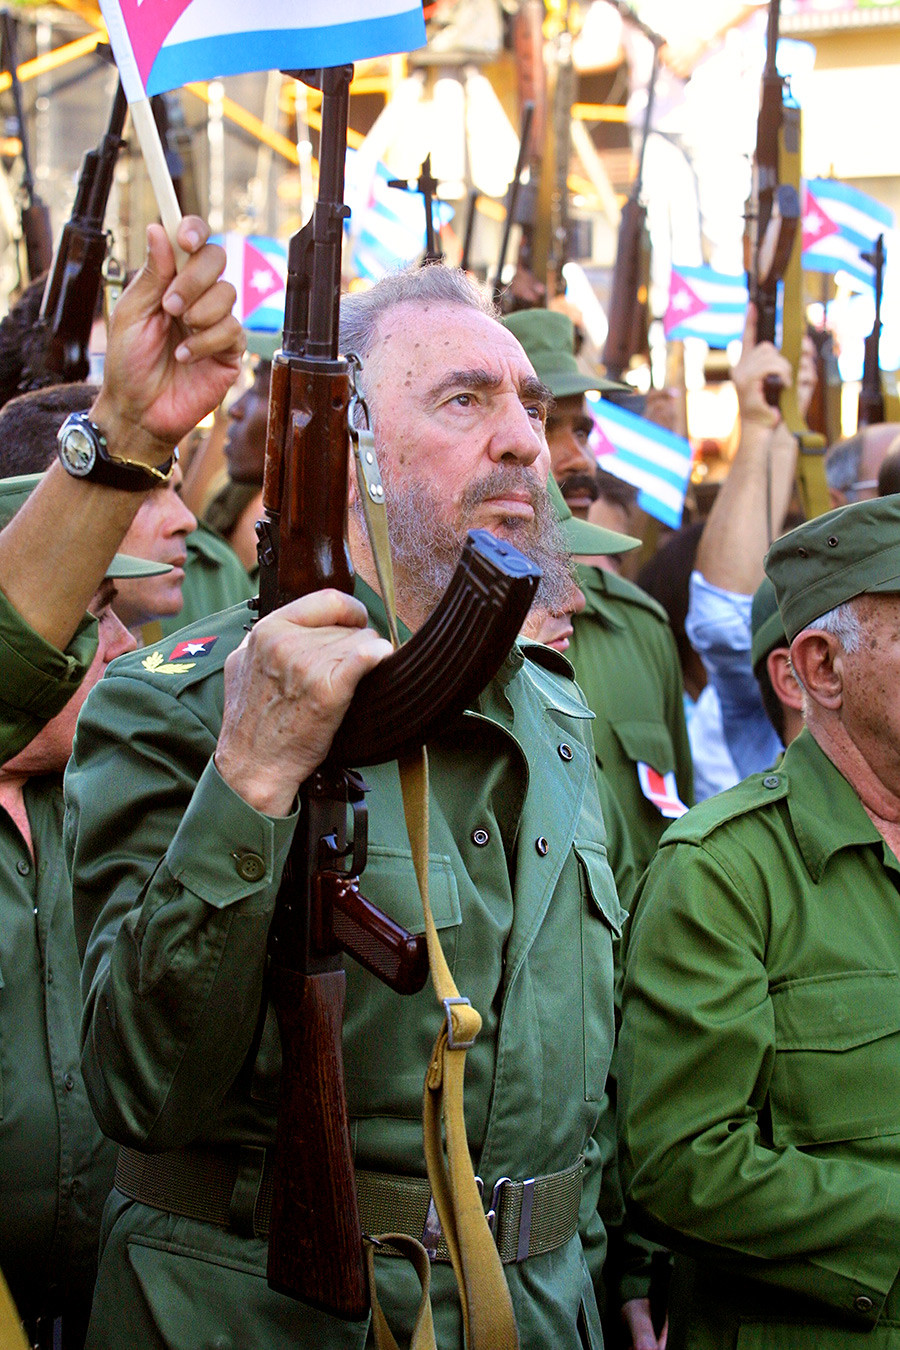 Кубански председник Фидел Кастро држећи калашњиков као симбол побуне на годишњици револуције 2001. године.